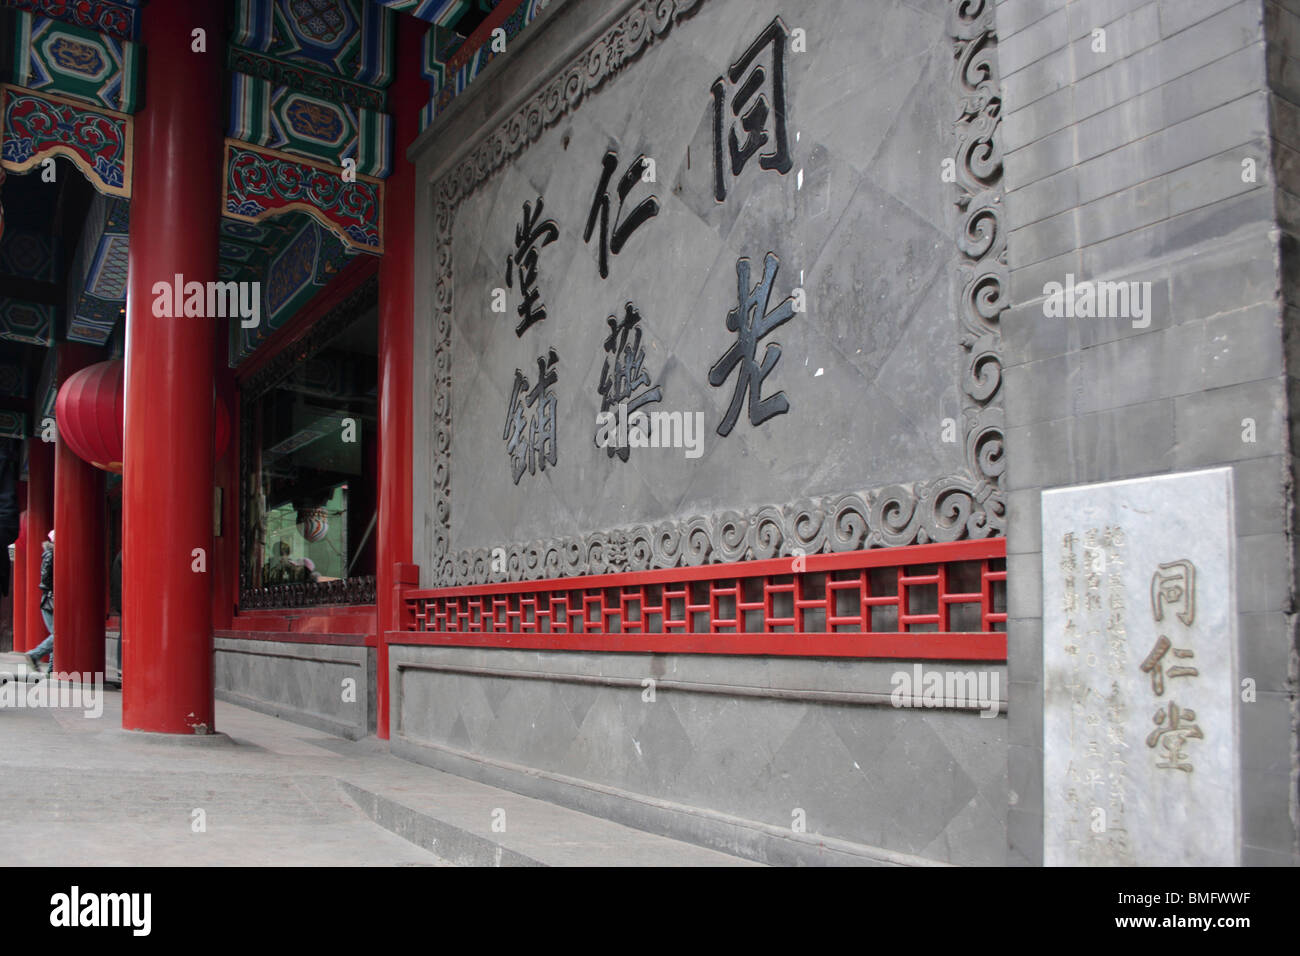 Tong Ren Tang, rue Commerçante Dashilan, rue Qianmen, Beijing, Chine Banque D'Images